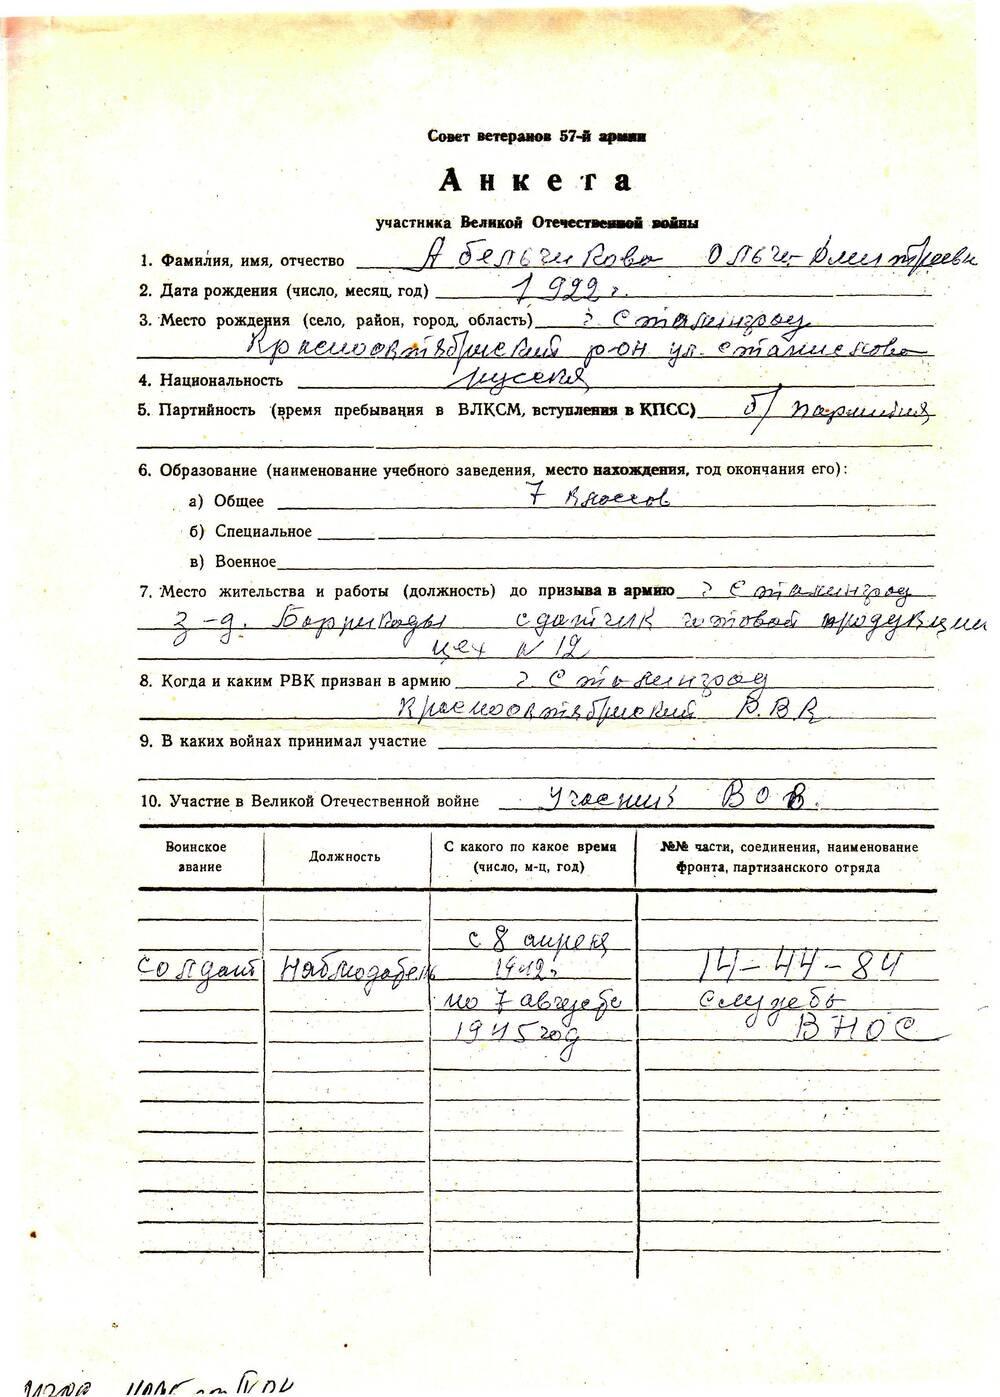 Анкета ветерана 57 армии Абельчикова Ольга Дмитриевна. 1 лист рукопись на типографском бланке.